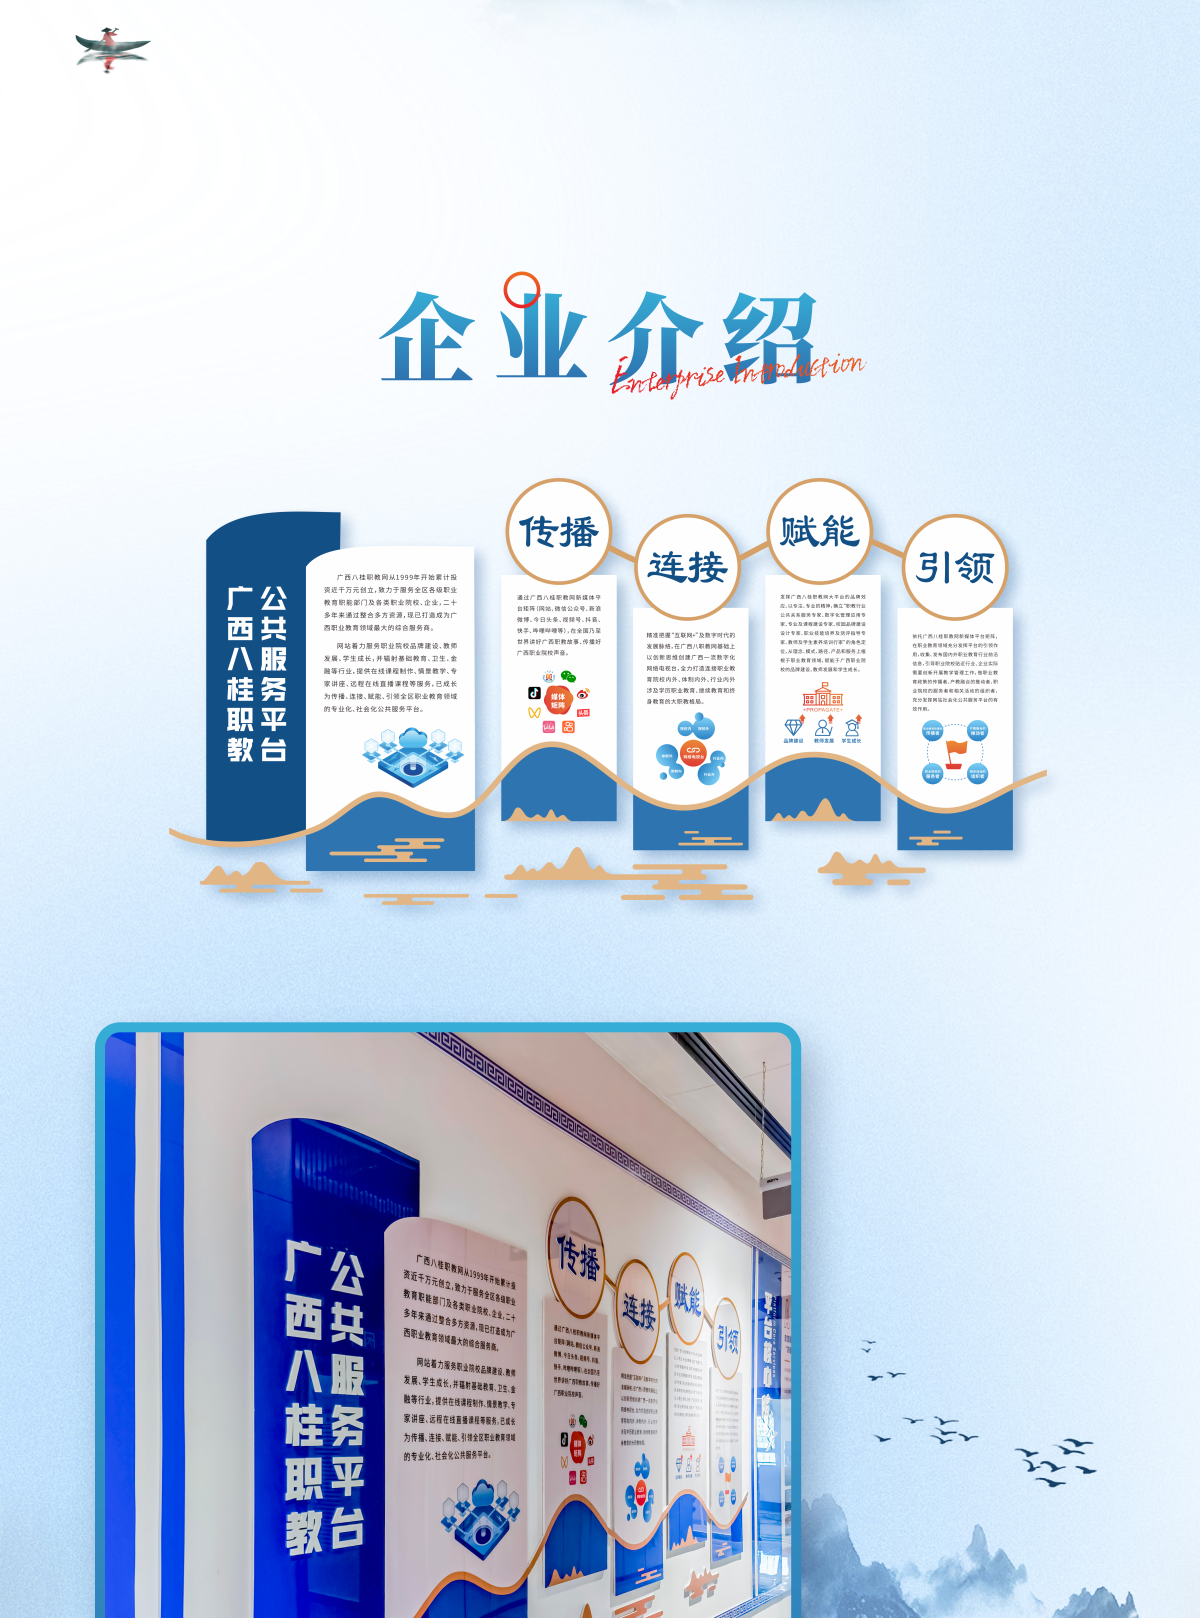 八桂职教网文化走廊企业文化墙设计制作_04.png